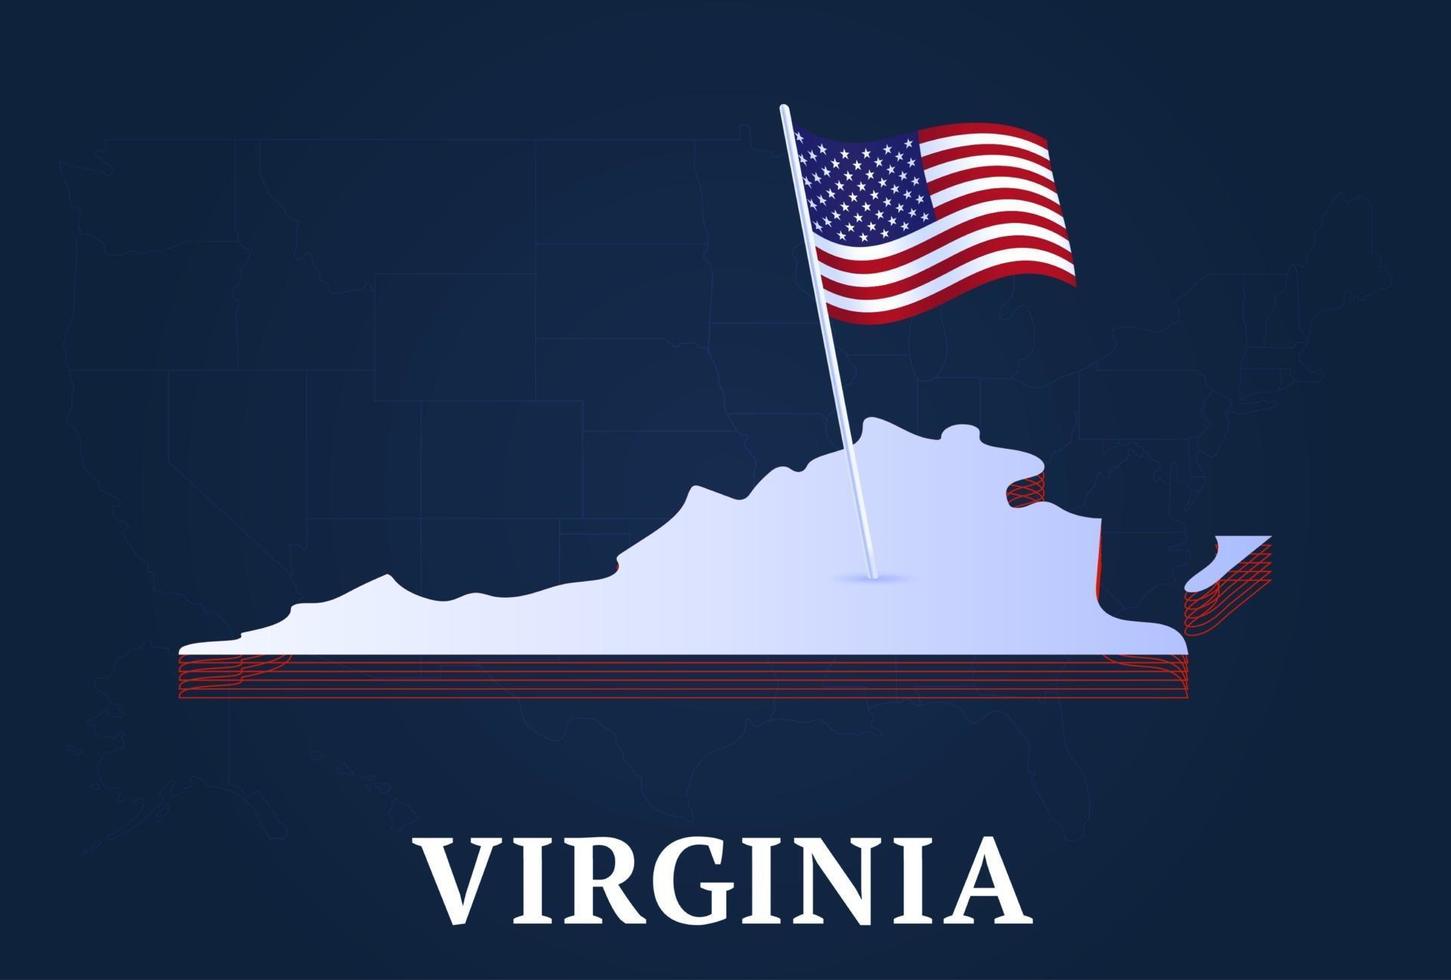 Carte isométrique de l'état de Virginie et drapeau national des États-Unis forme isométrique 3d de l'illustration vectorielle de l'état américain vecteur